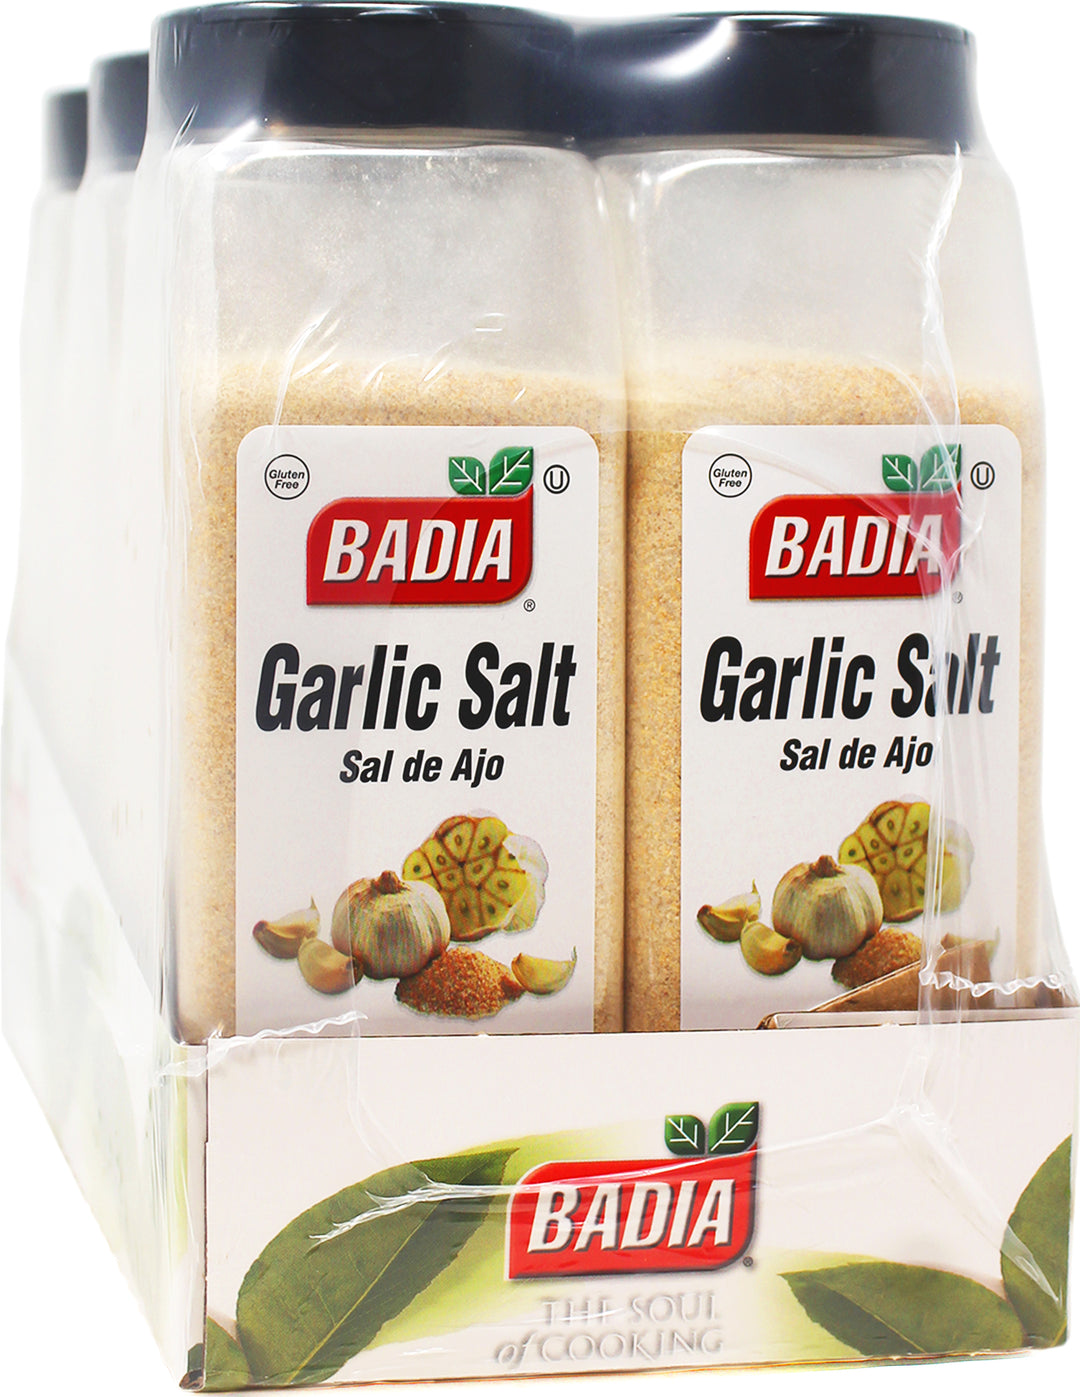 Badia Garlic Salt 6/2 Lb.